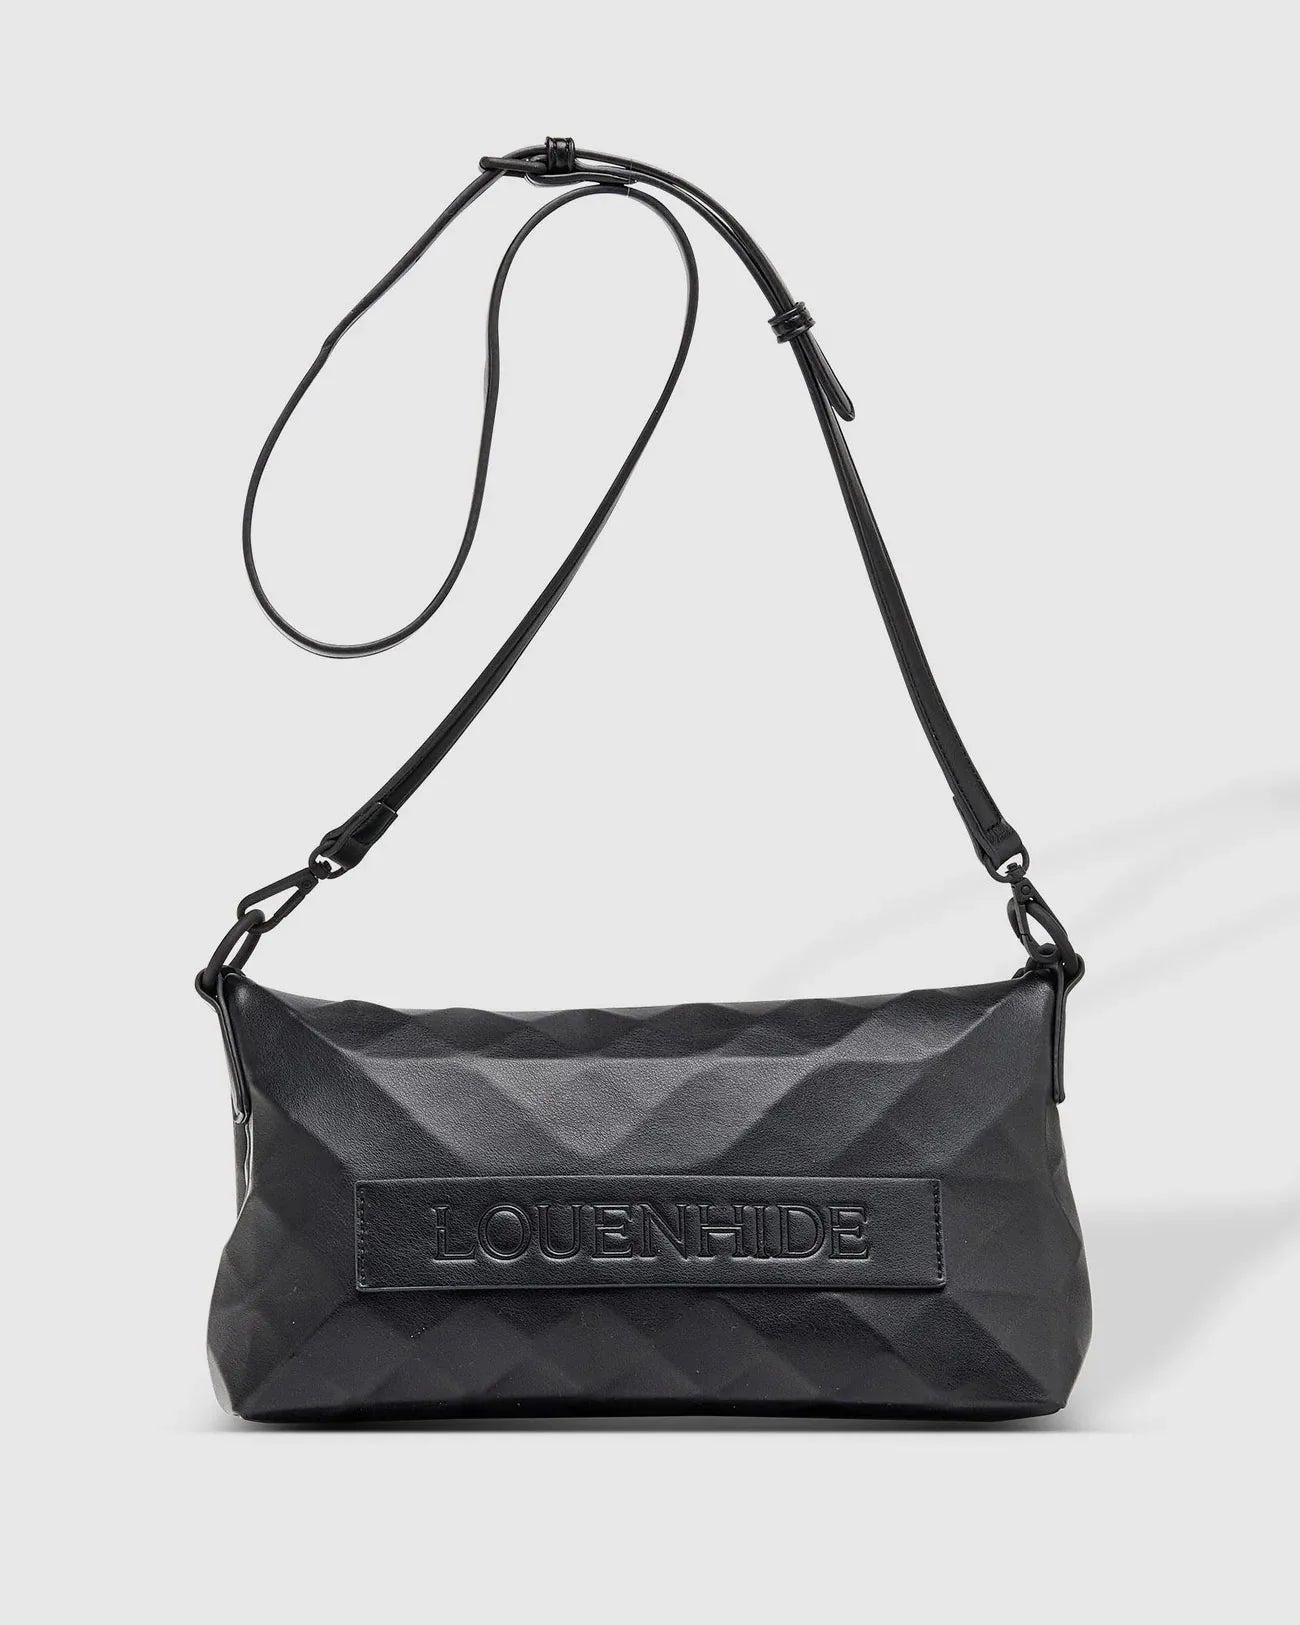 Marley Shoulder Bag (Black) - Something For Me​​